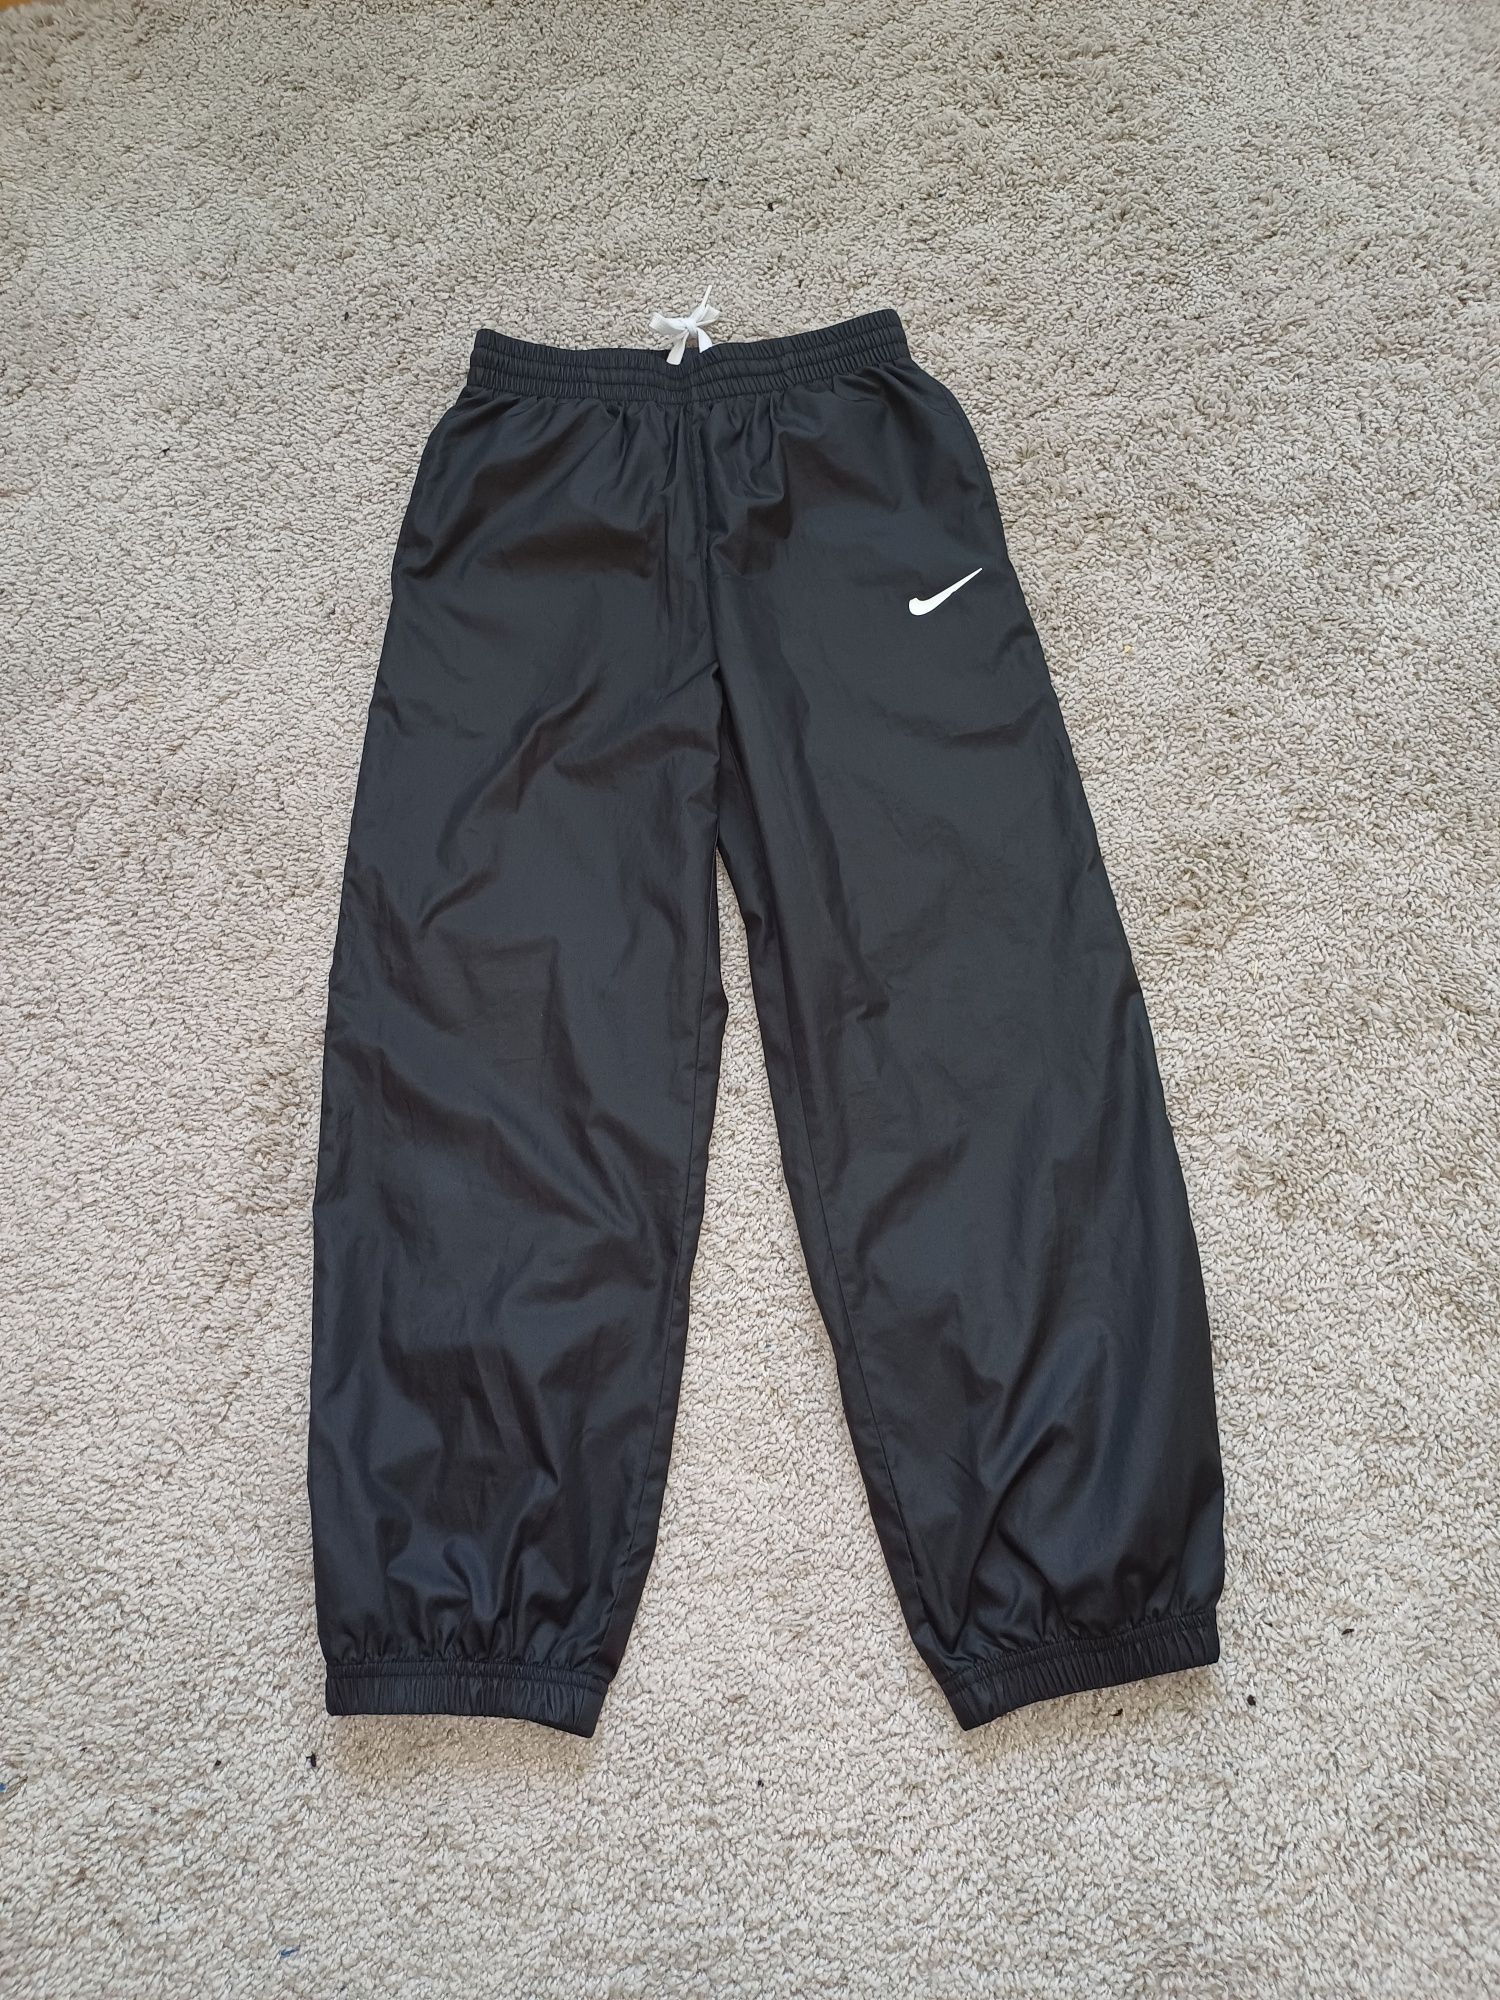 Spodnie Nike 10-12 lat rozm.137-147 cm